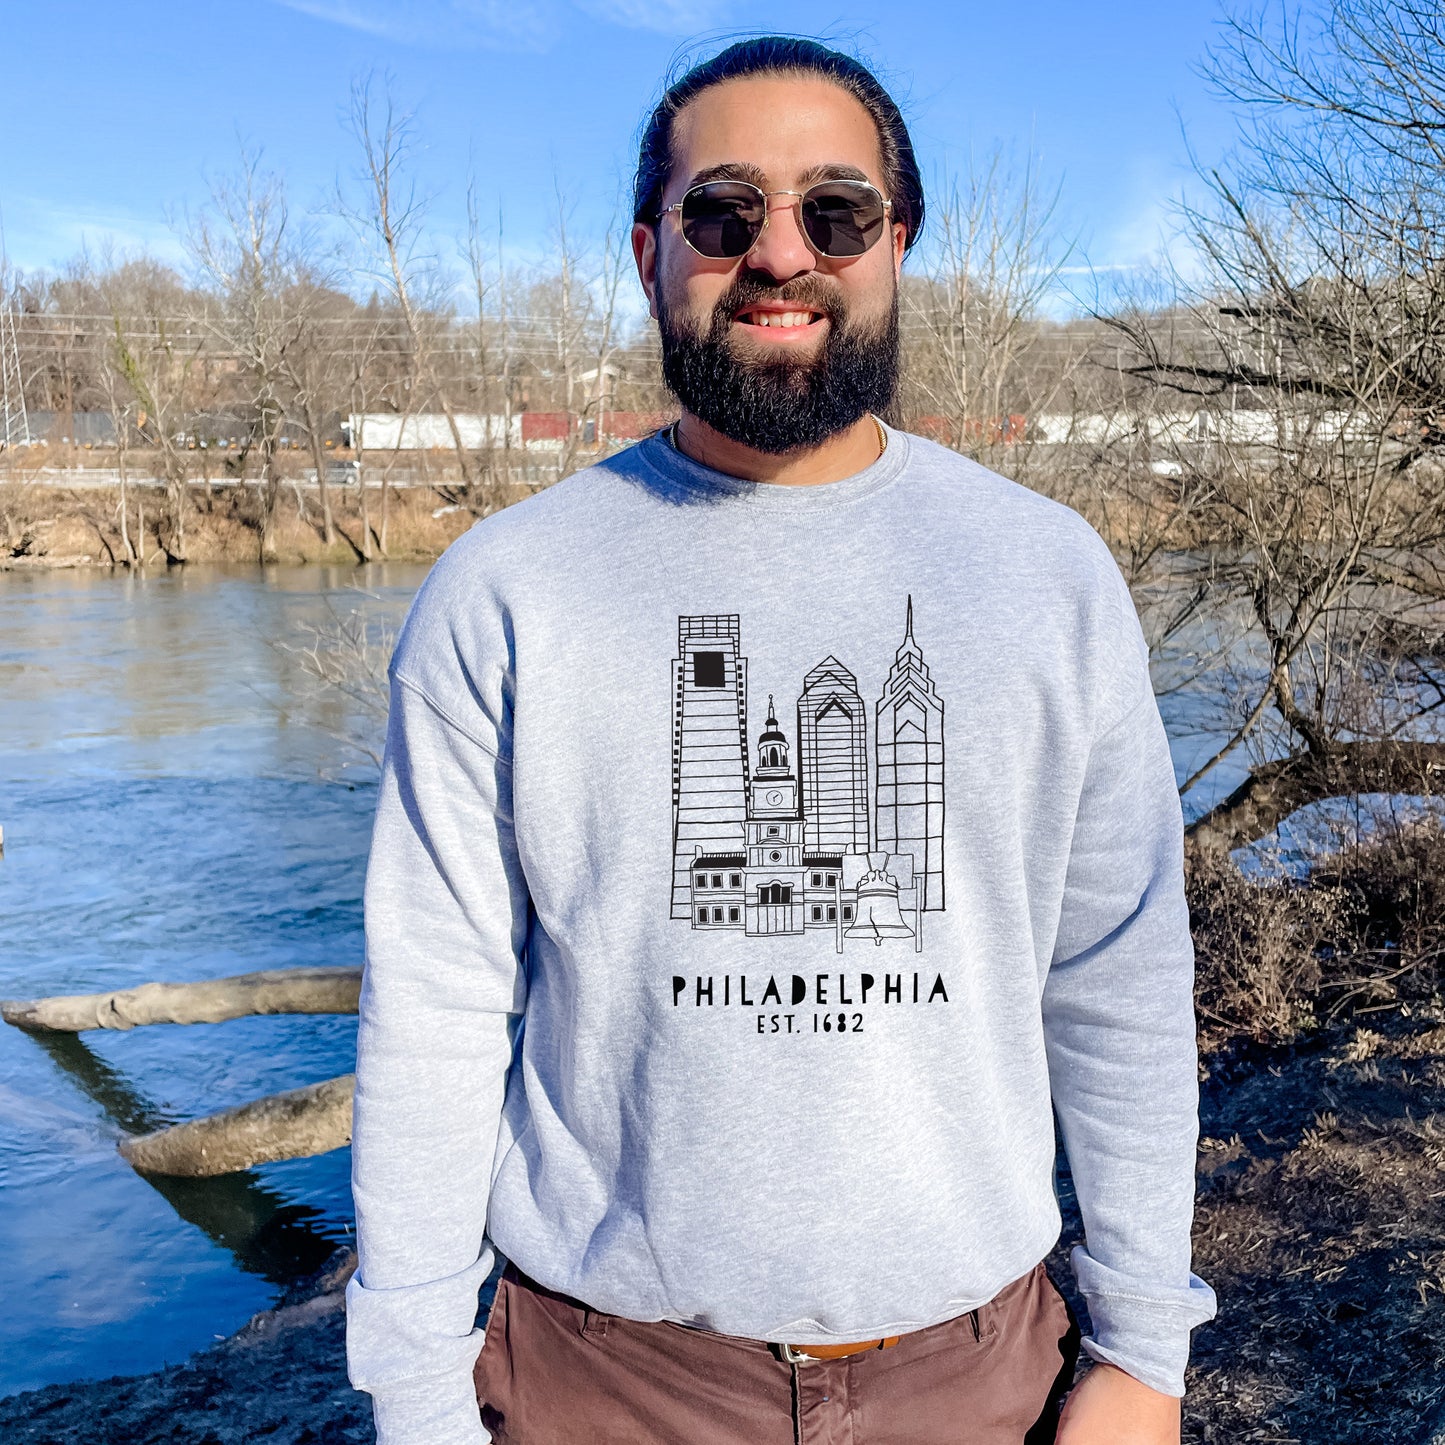 Downtown Philadelphia, PA - Unisex Sweatshirt - Heather Gray or Dusty Blue